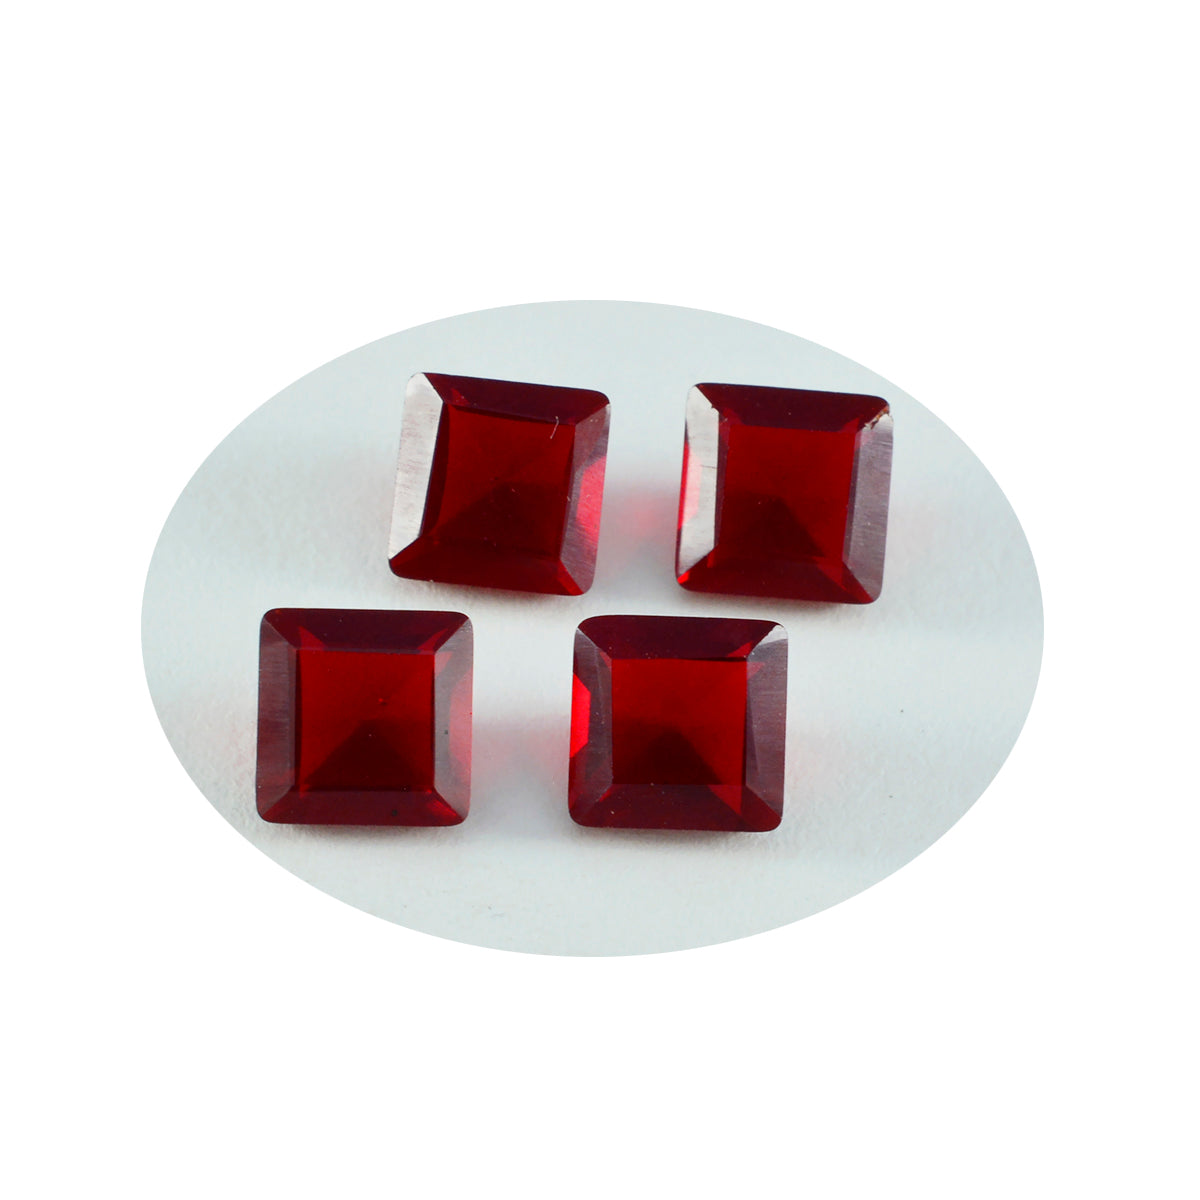 riyogems 1 шт., красные рубины с цирконием, ограненные, 10x10 мм, квадратной формы, качественные, россыпные драгоценные камни